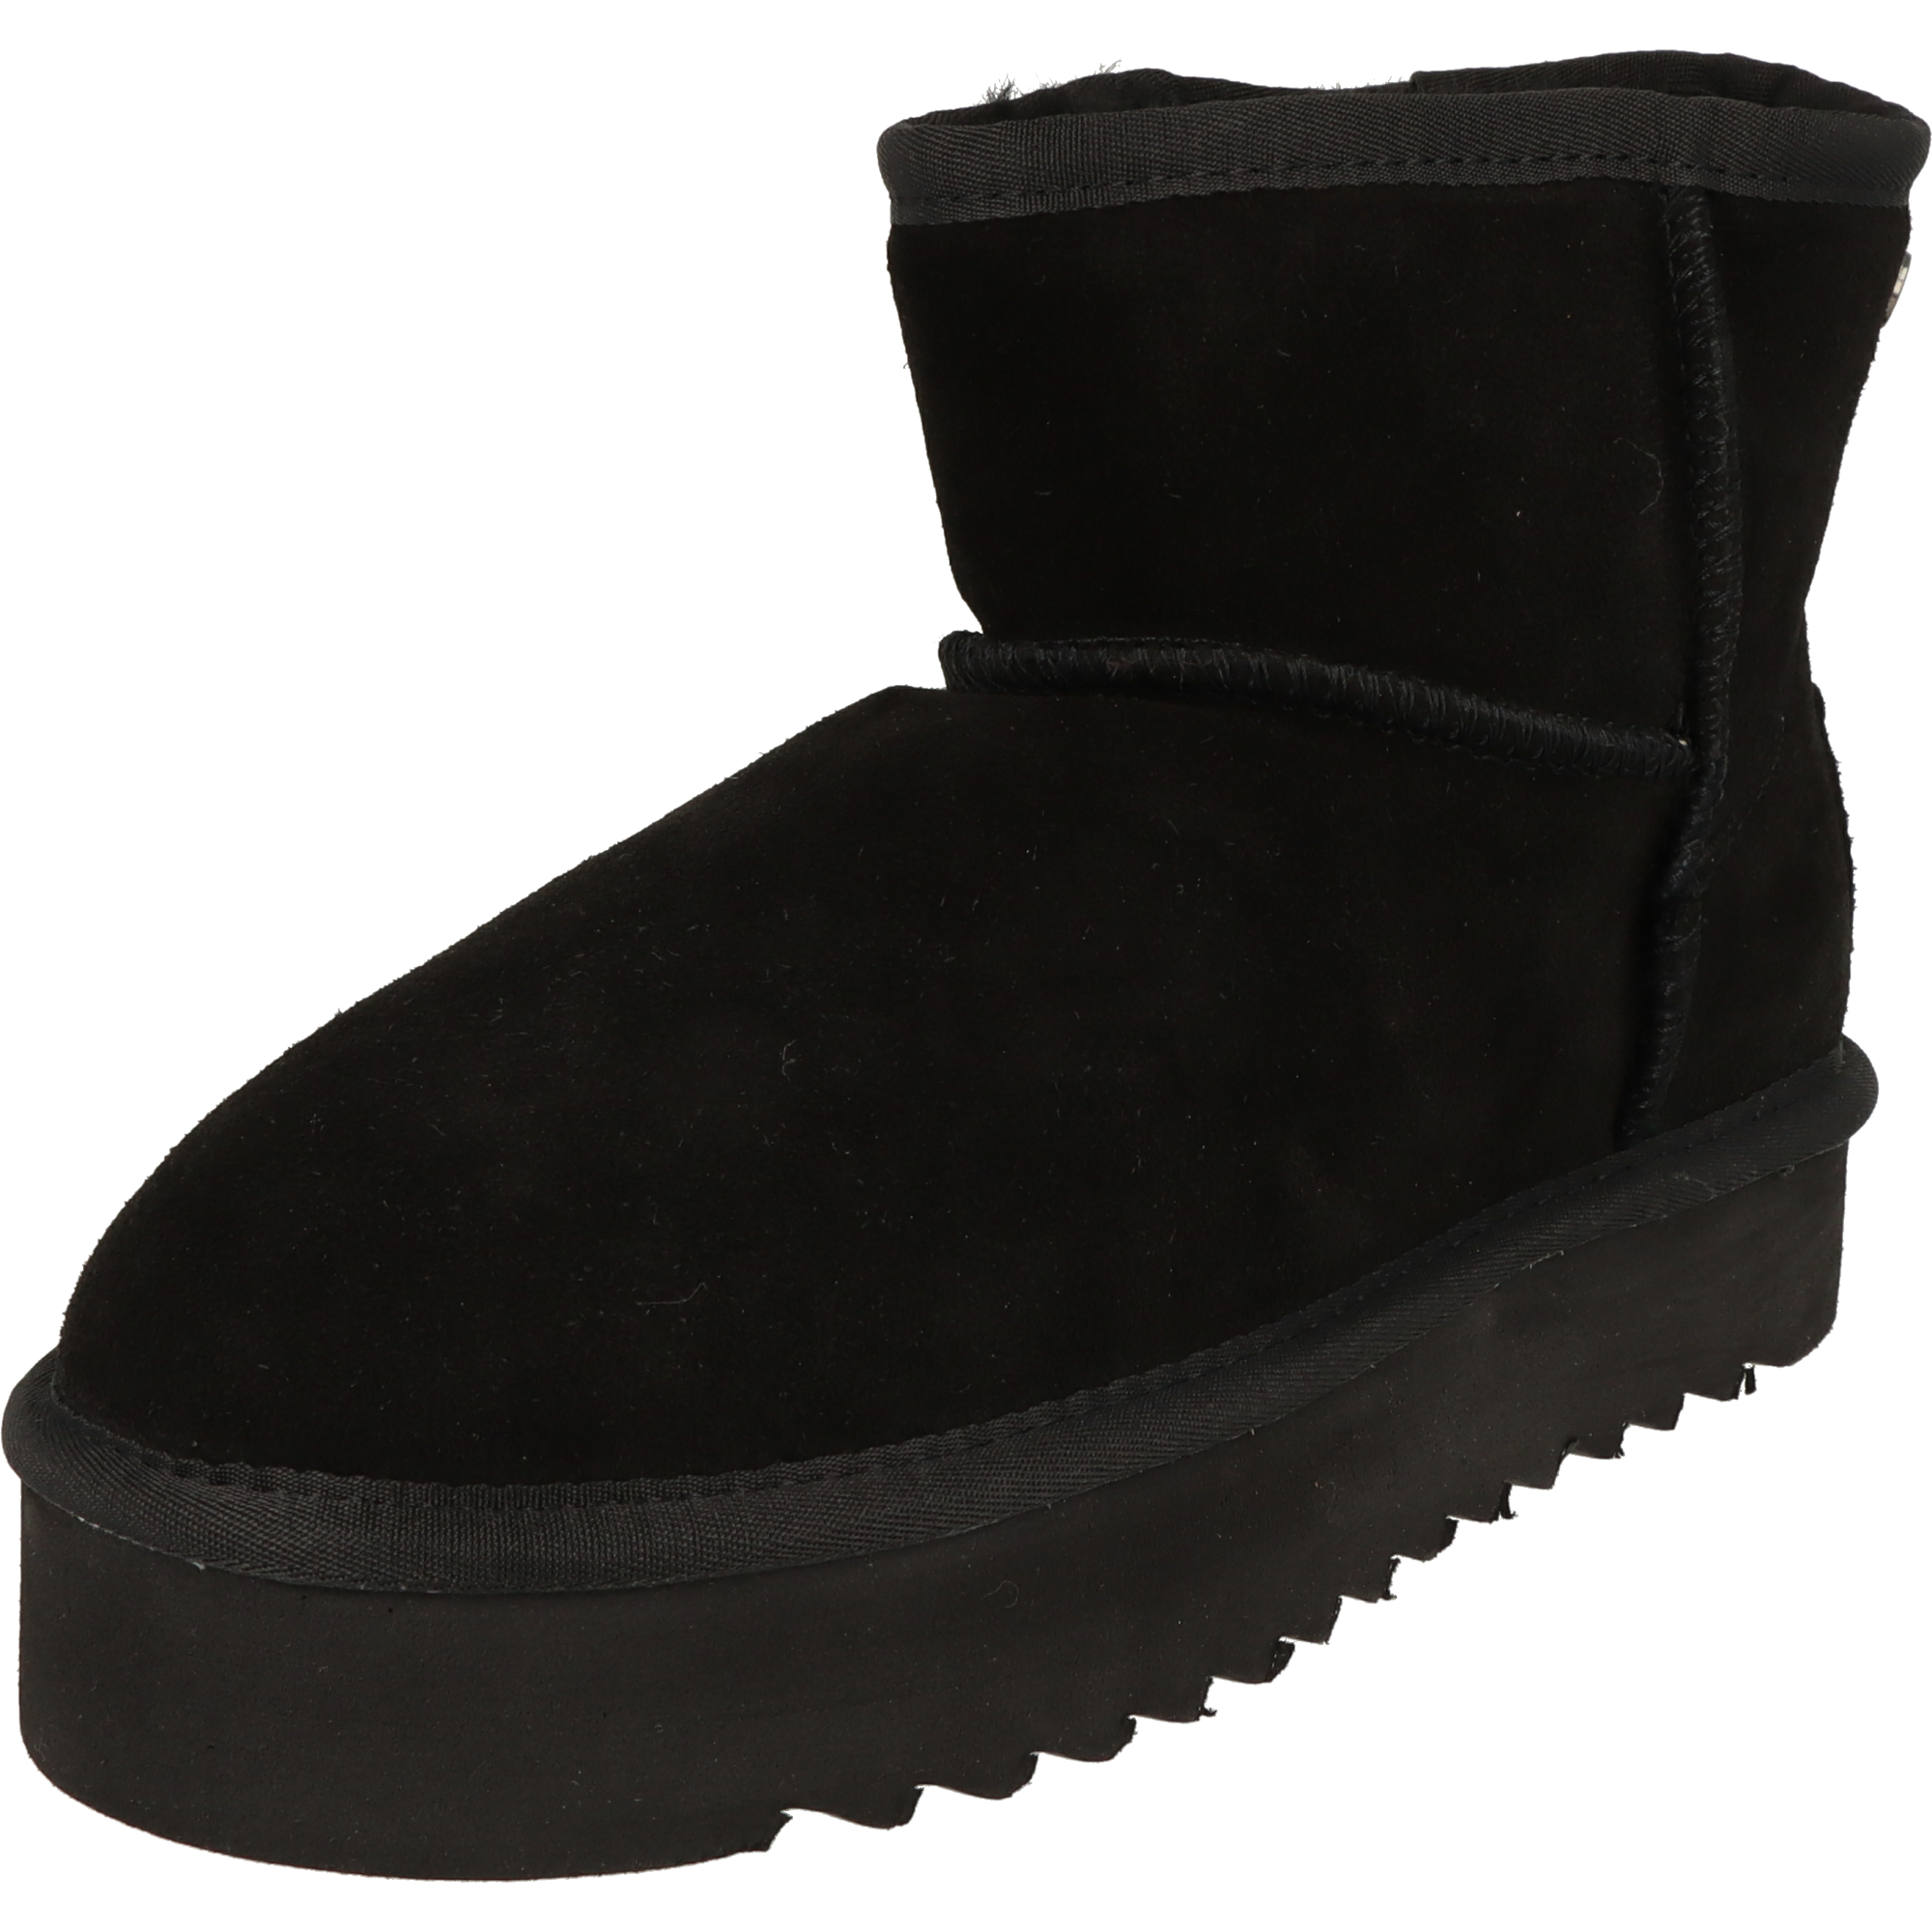 Piece Of Mind Damen Schuhe Plateau Winter Leder Boots 264-713 gefüttert Black